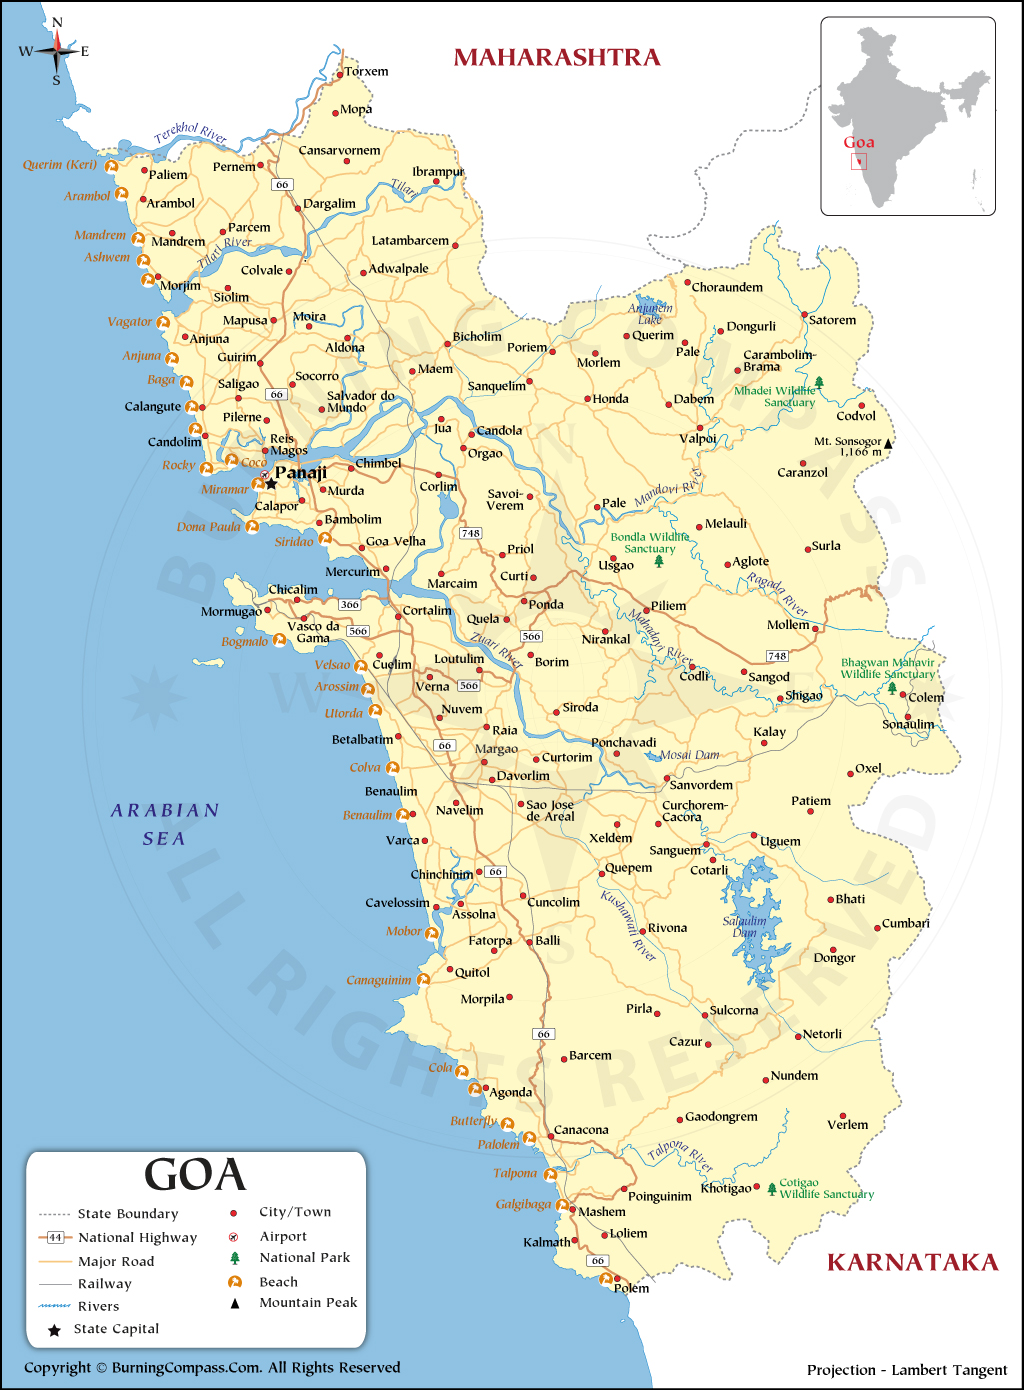 goa tourist map in marathi